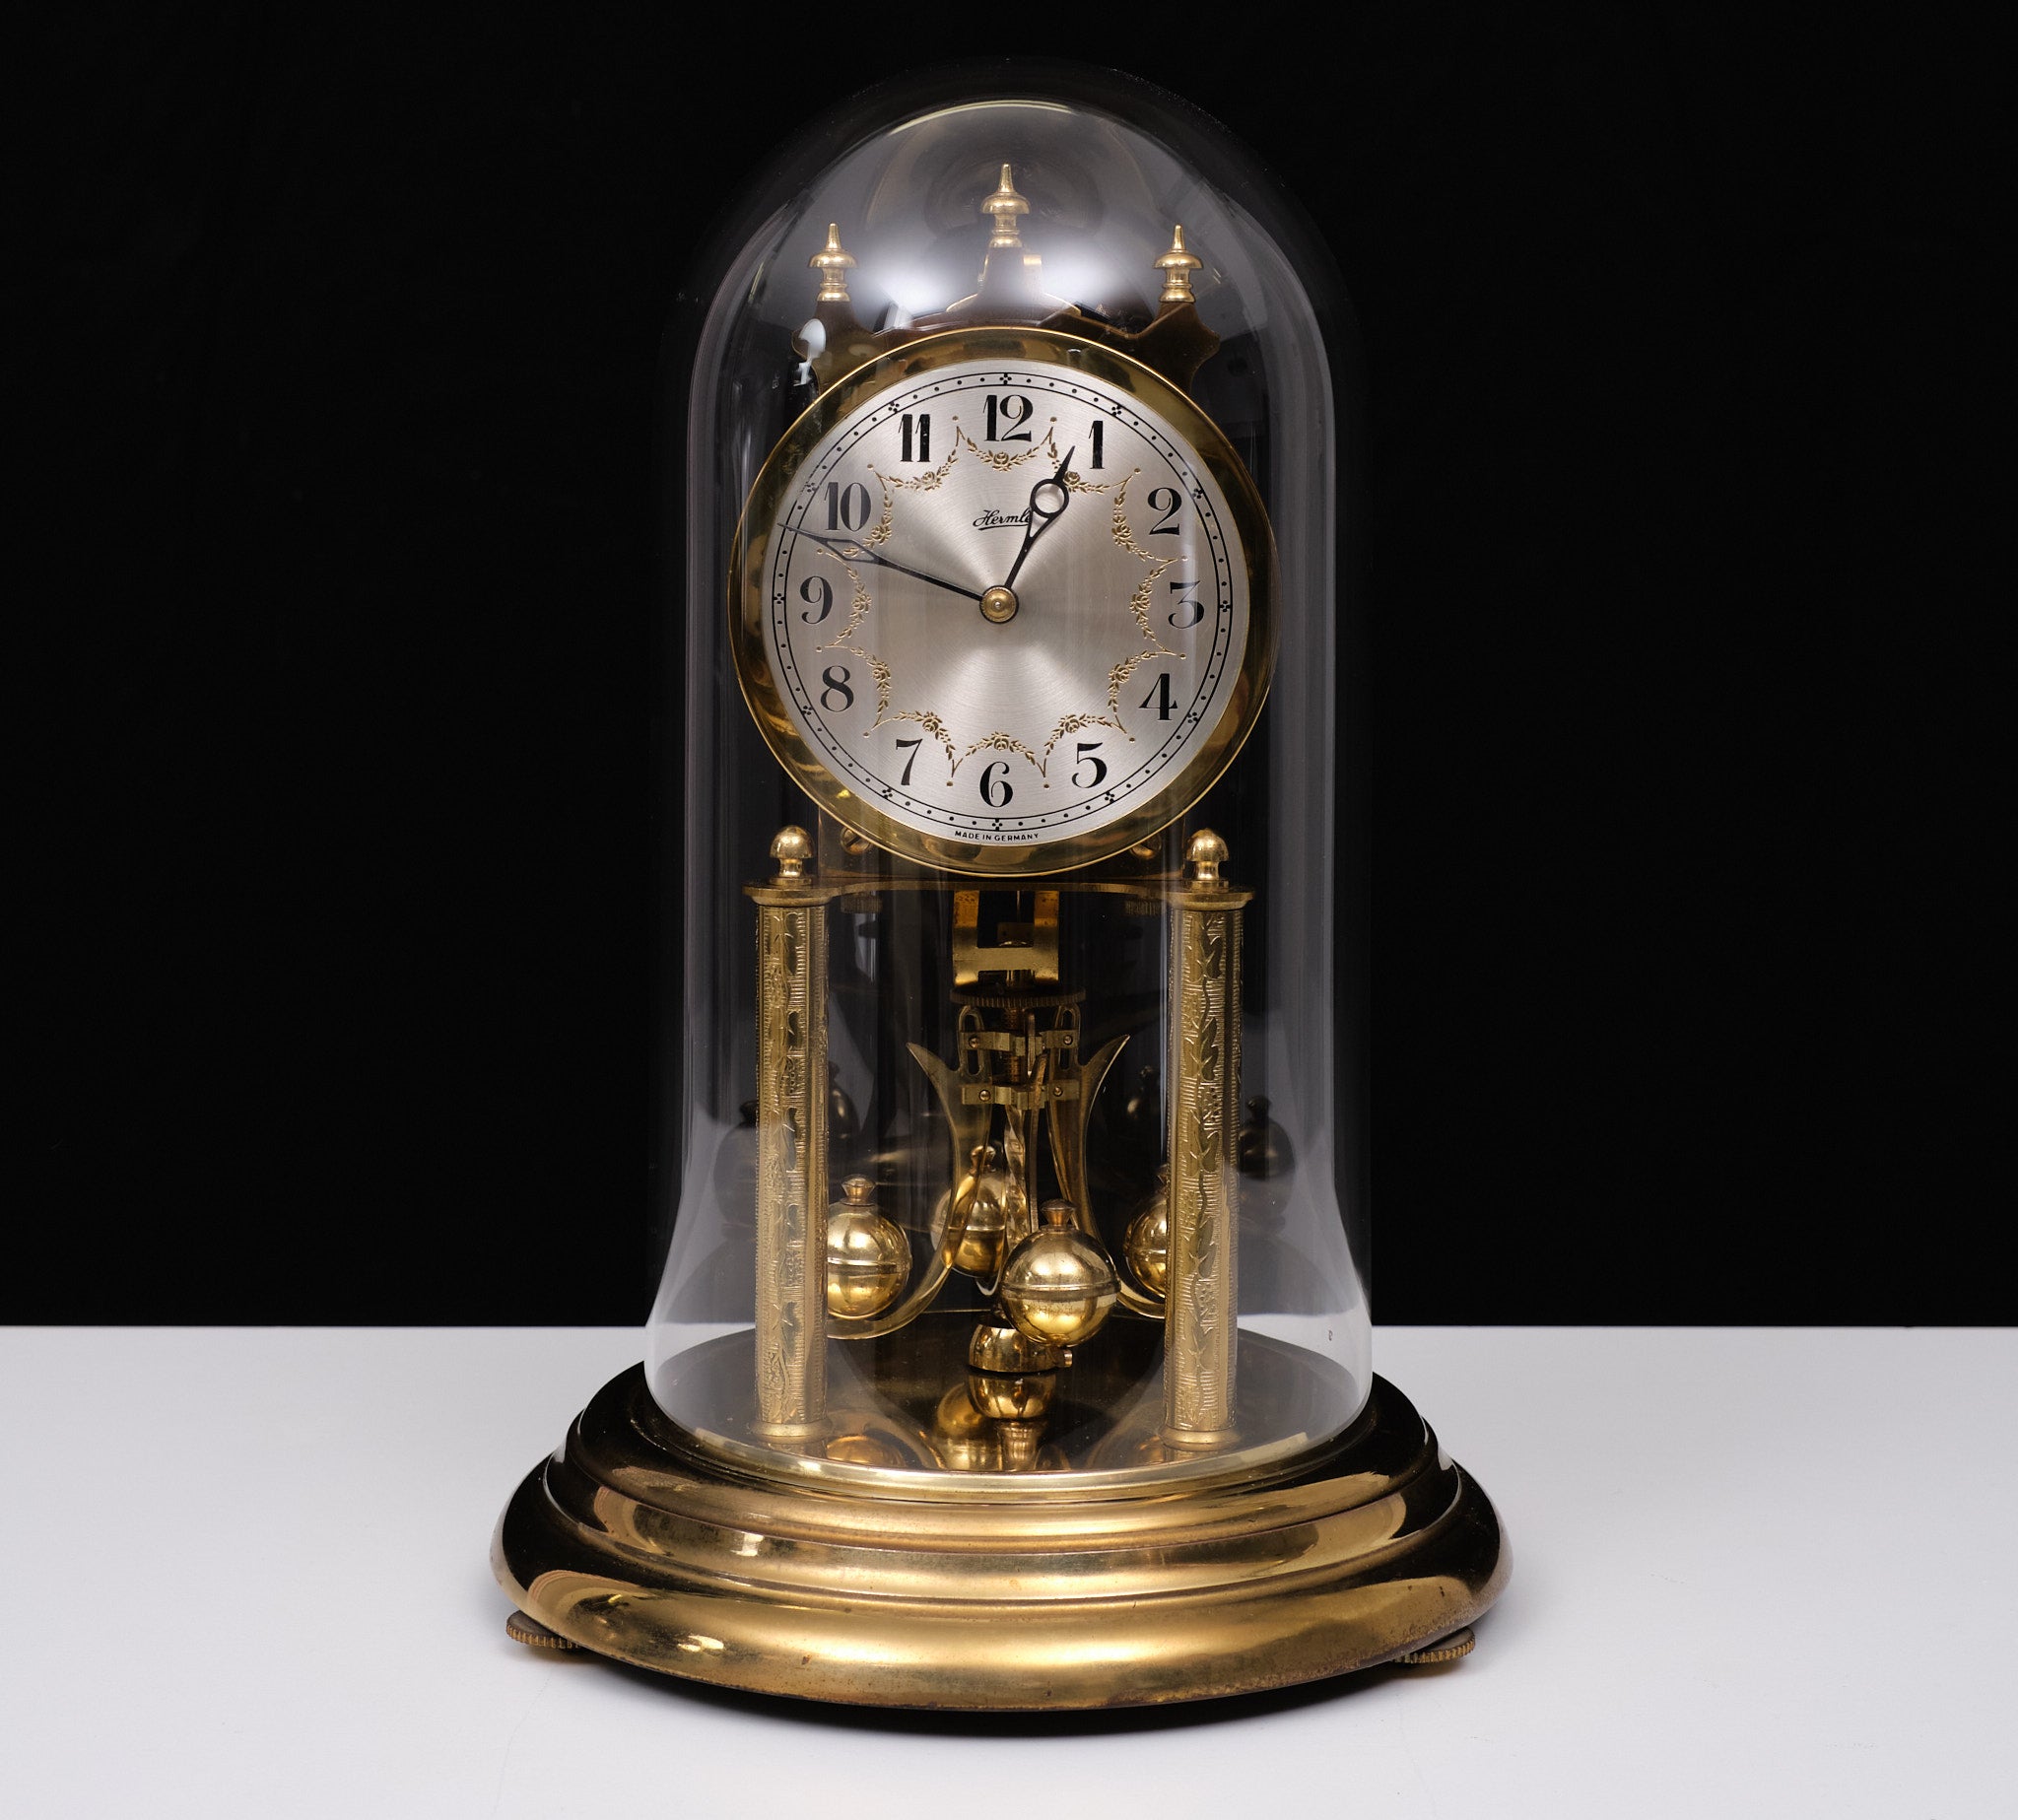 
Horloge de manteau à dôme anniversaire Franz Hermle
Modèle : FHS 921 001
Il s'agit d'une très belle horloge anniversaire à remontoir de 400 jours de Franz Hermle, un leader mondial dans la fabrication d'horloges et de mouvements d'horlogerie